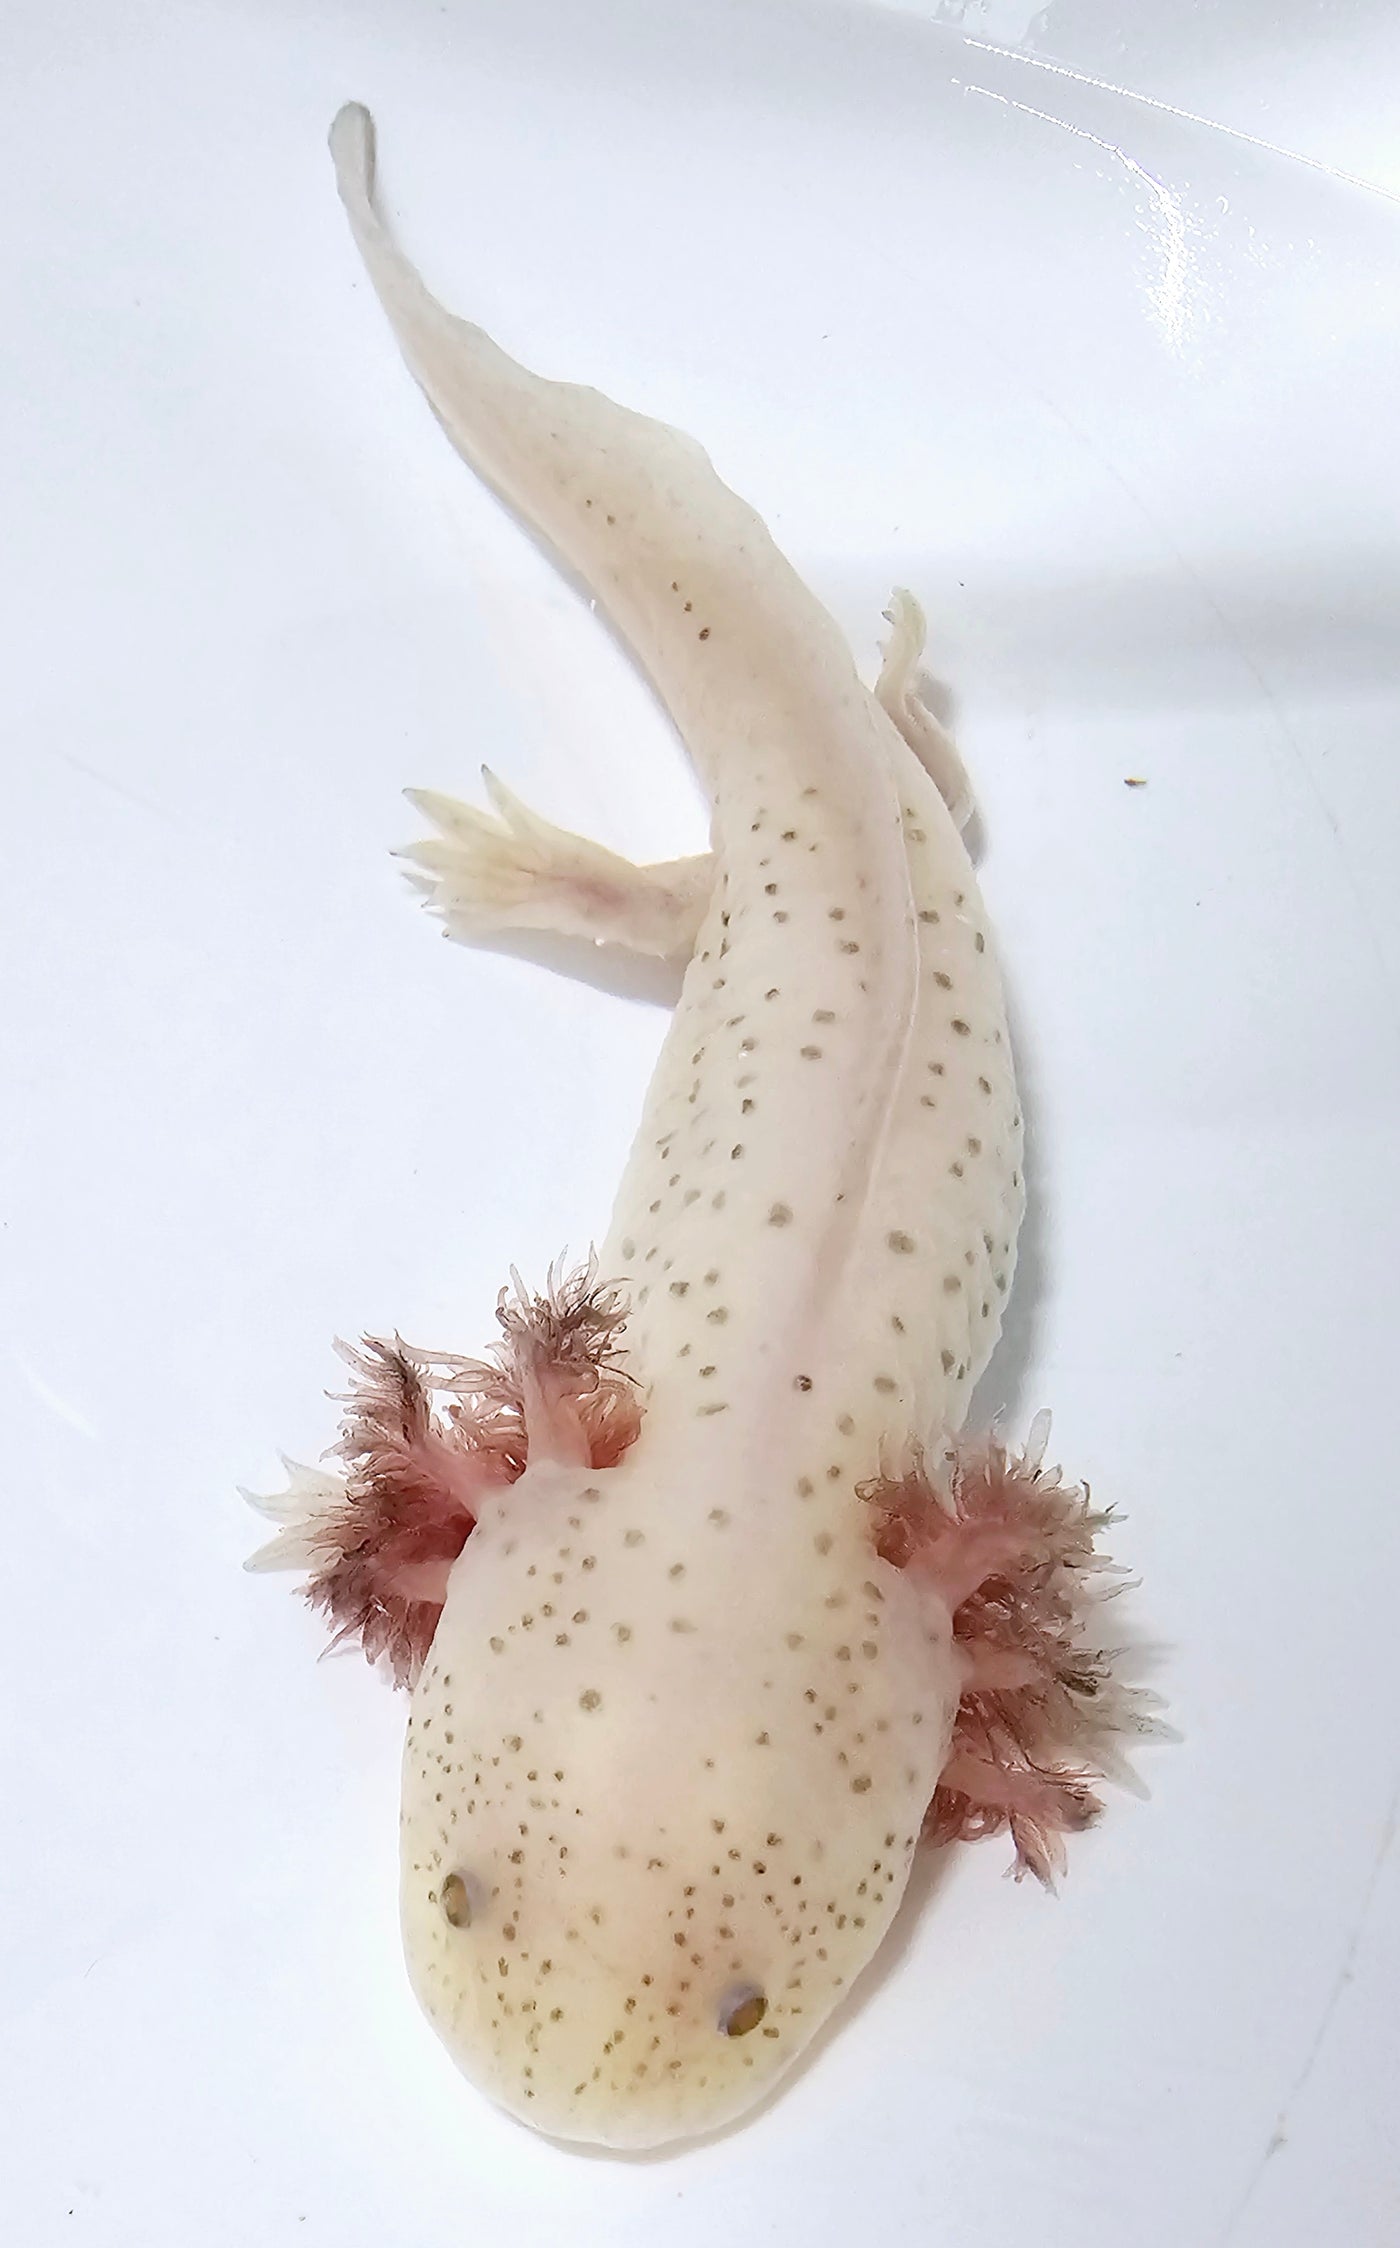 SA WYSIWYG Hypomelanistic Axolotl